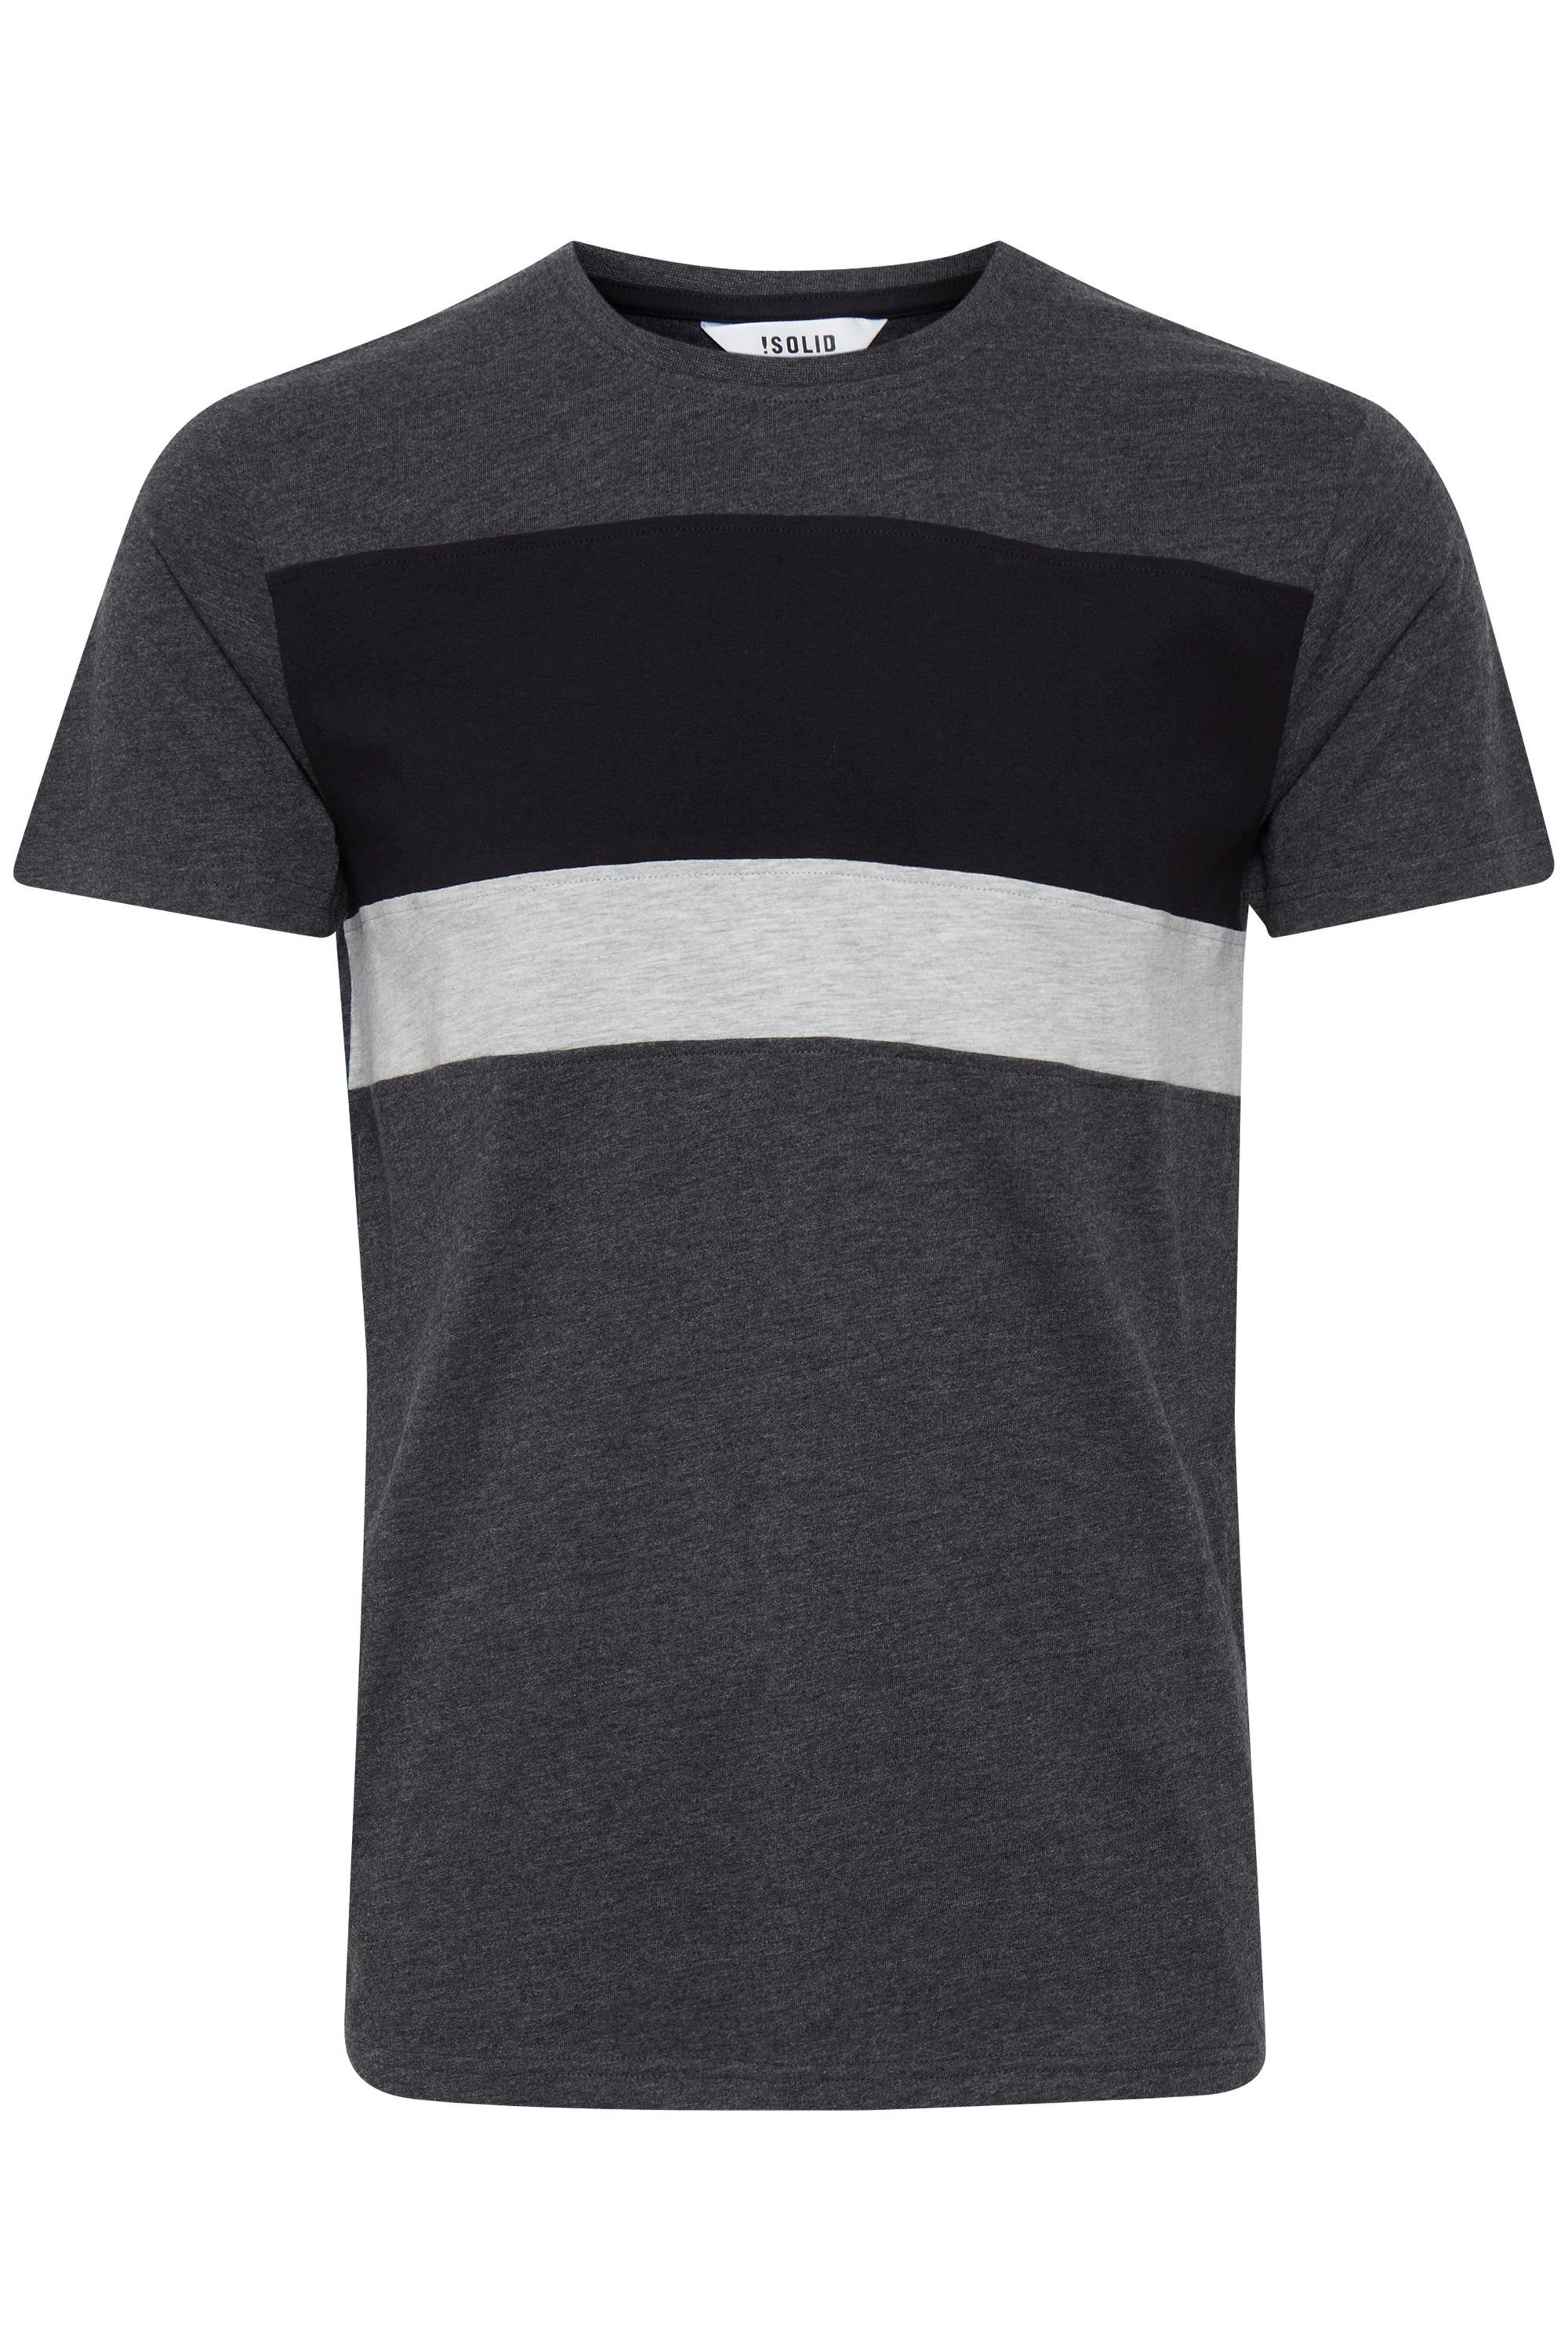 !Solid Rundhalsshirt SDSascha T-Shirt in Tricolor Streifenoptik Dark Grey Melange (8288)